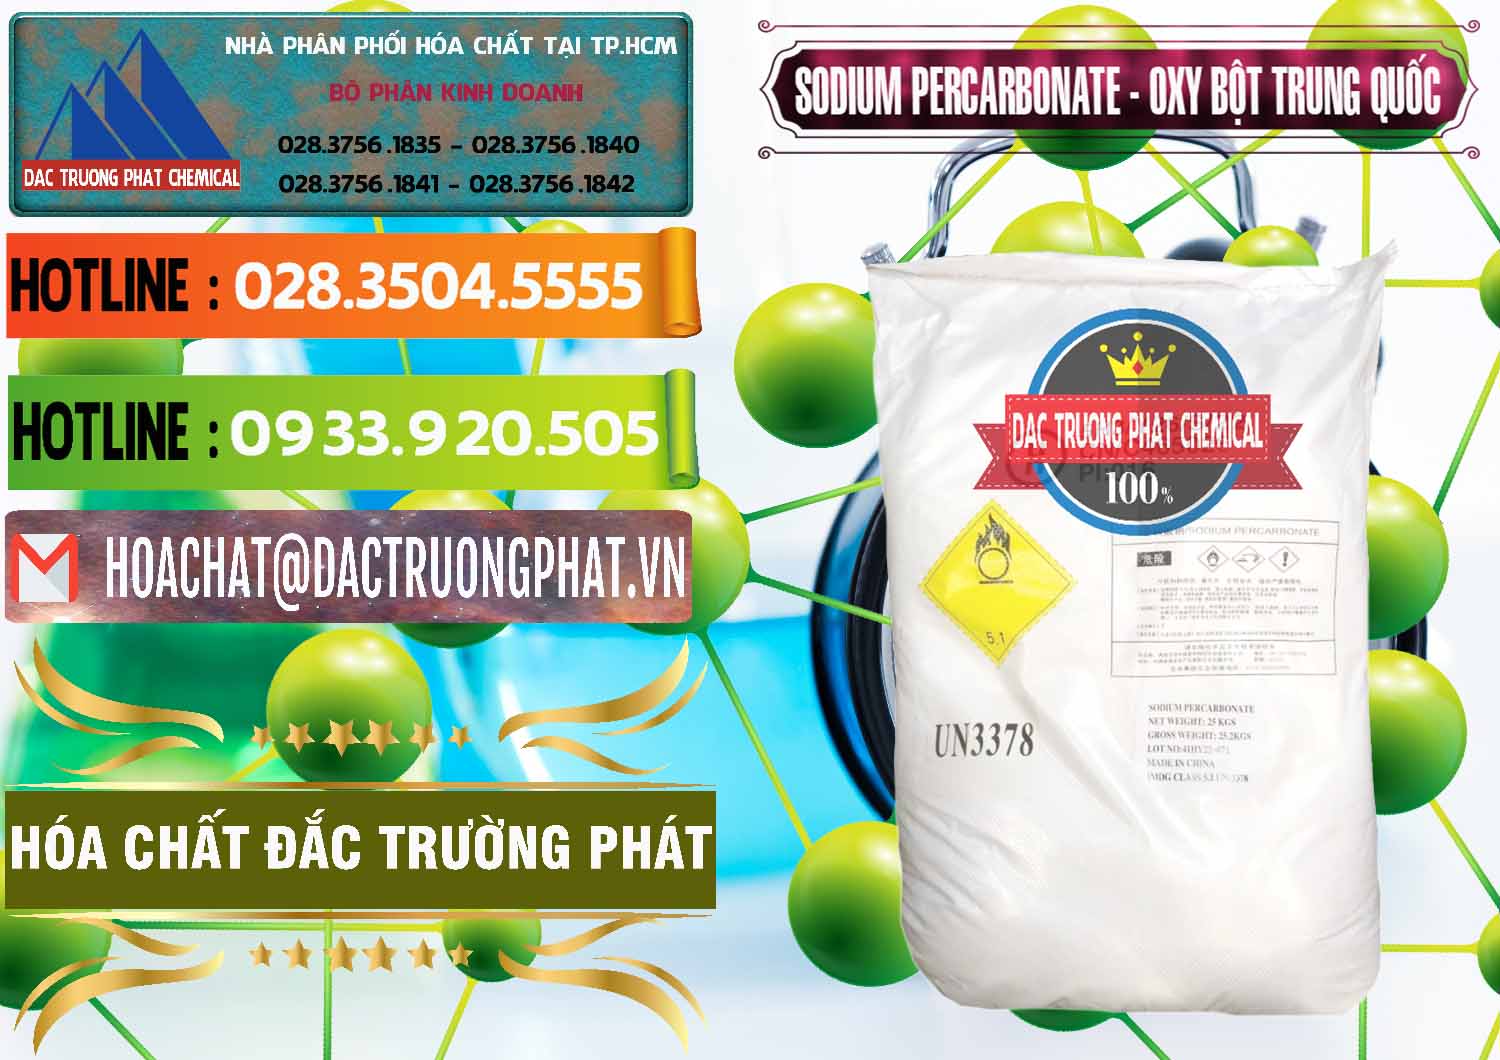 Chuyên nhập khẩu và bán Sodium Percarbonate Dạng Bột Trung Quốc China - 0390 - Chuyên kinh doanh - cung cấp hóa chất tại TP.HCM - cungcaphoachat.com.vn